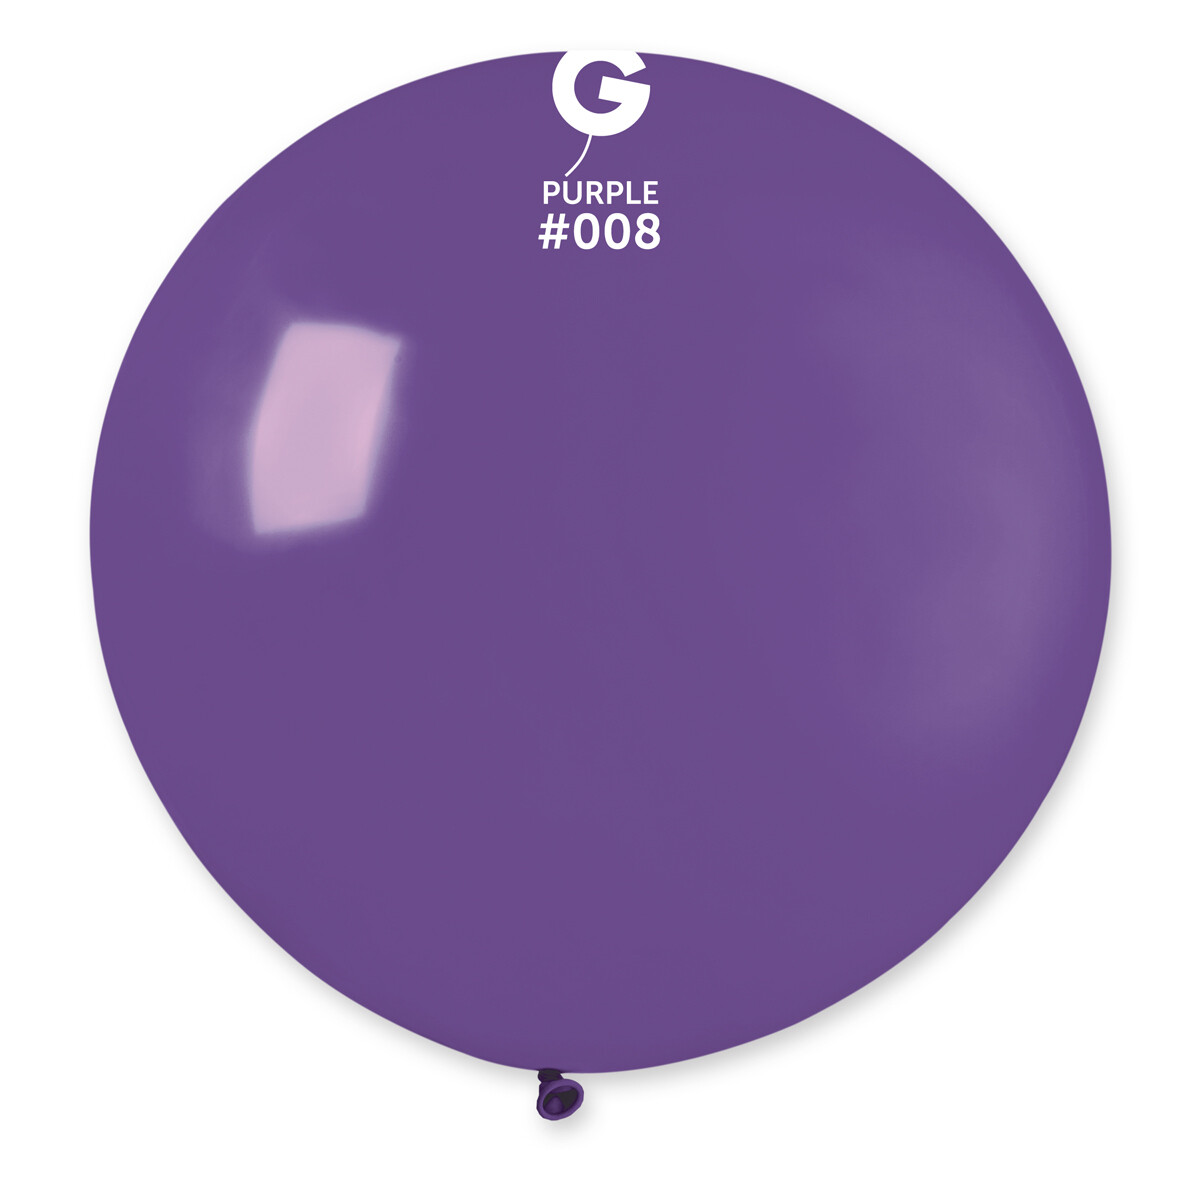 Standard Purple #008 31in - 1 piece